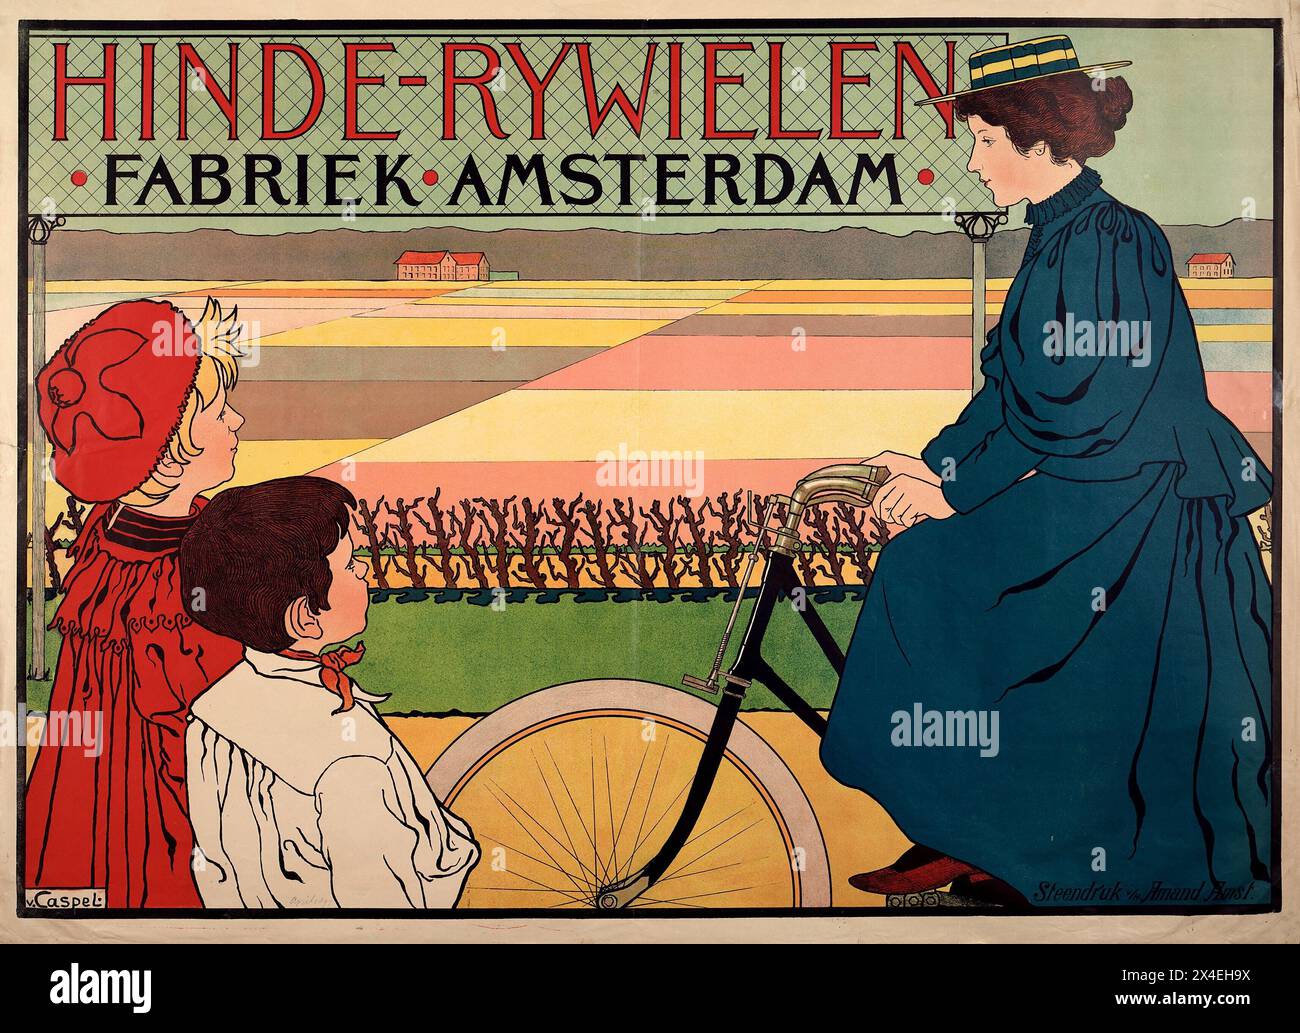 Niederländisches Vintage-Werbeplakat: Hinde-Rijwielen Fahrradfabrik Amsterdam von Johann Georg van Caspel, 1890er Jahre zeigt eine alte Frau auf einem Fahrrad, auf die zwei Kinder in niederländischer Landschaft blicken Stockfoto